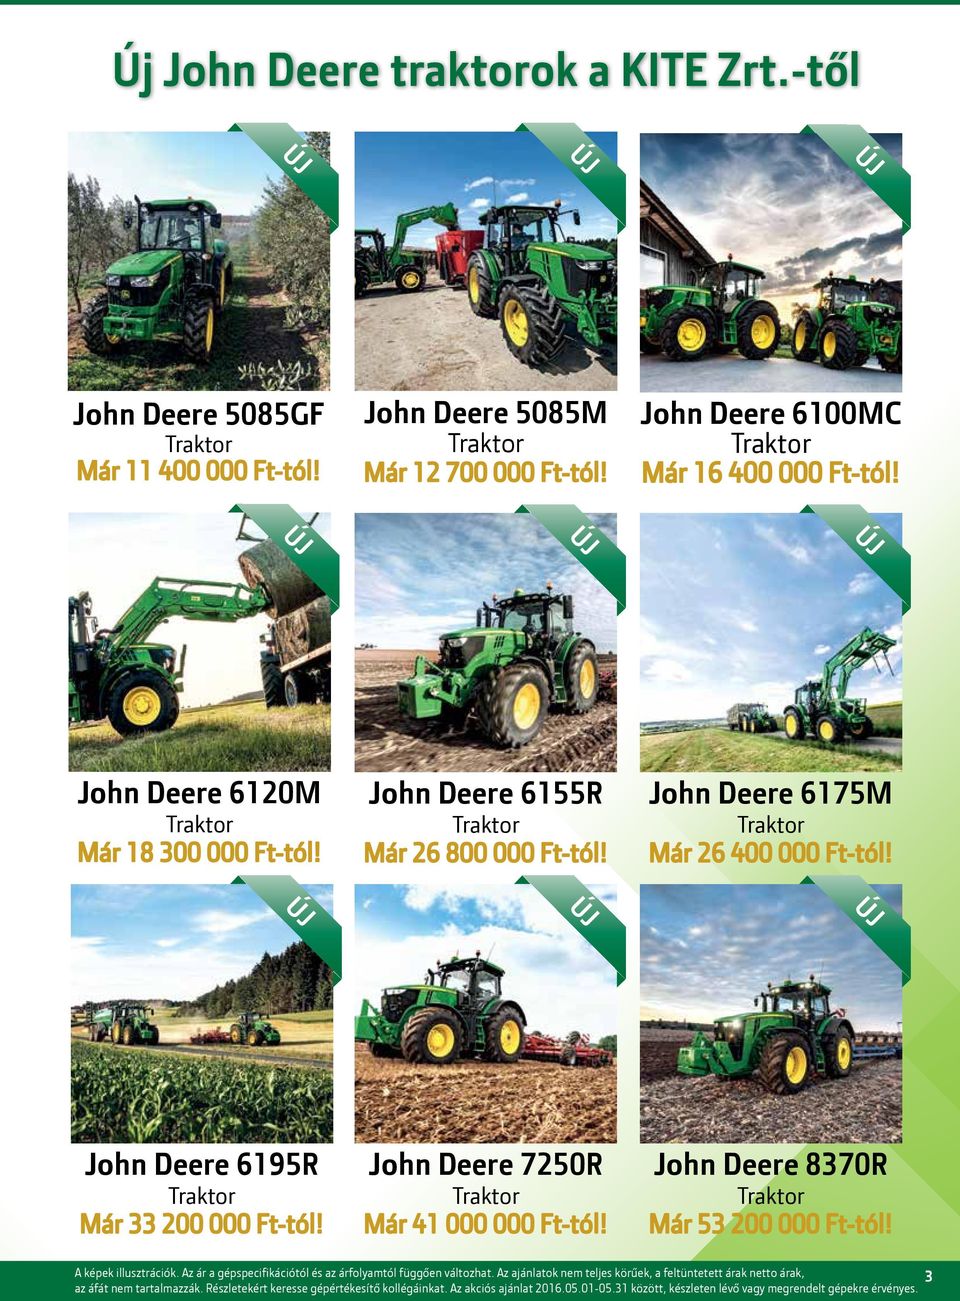 ÚJ ÚJ ÚJ John Deere 6195R Traktor Már 33 200 000 Ft-tól! John Deere 7250R Traktor Már 41 000 000 Ft-tól! John Deere 8370R Traktor Már 53 200 000 Ft-tól! A képek illusztrációk.